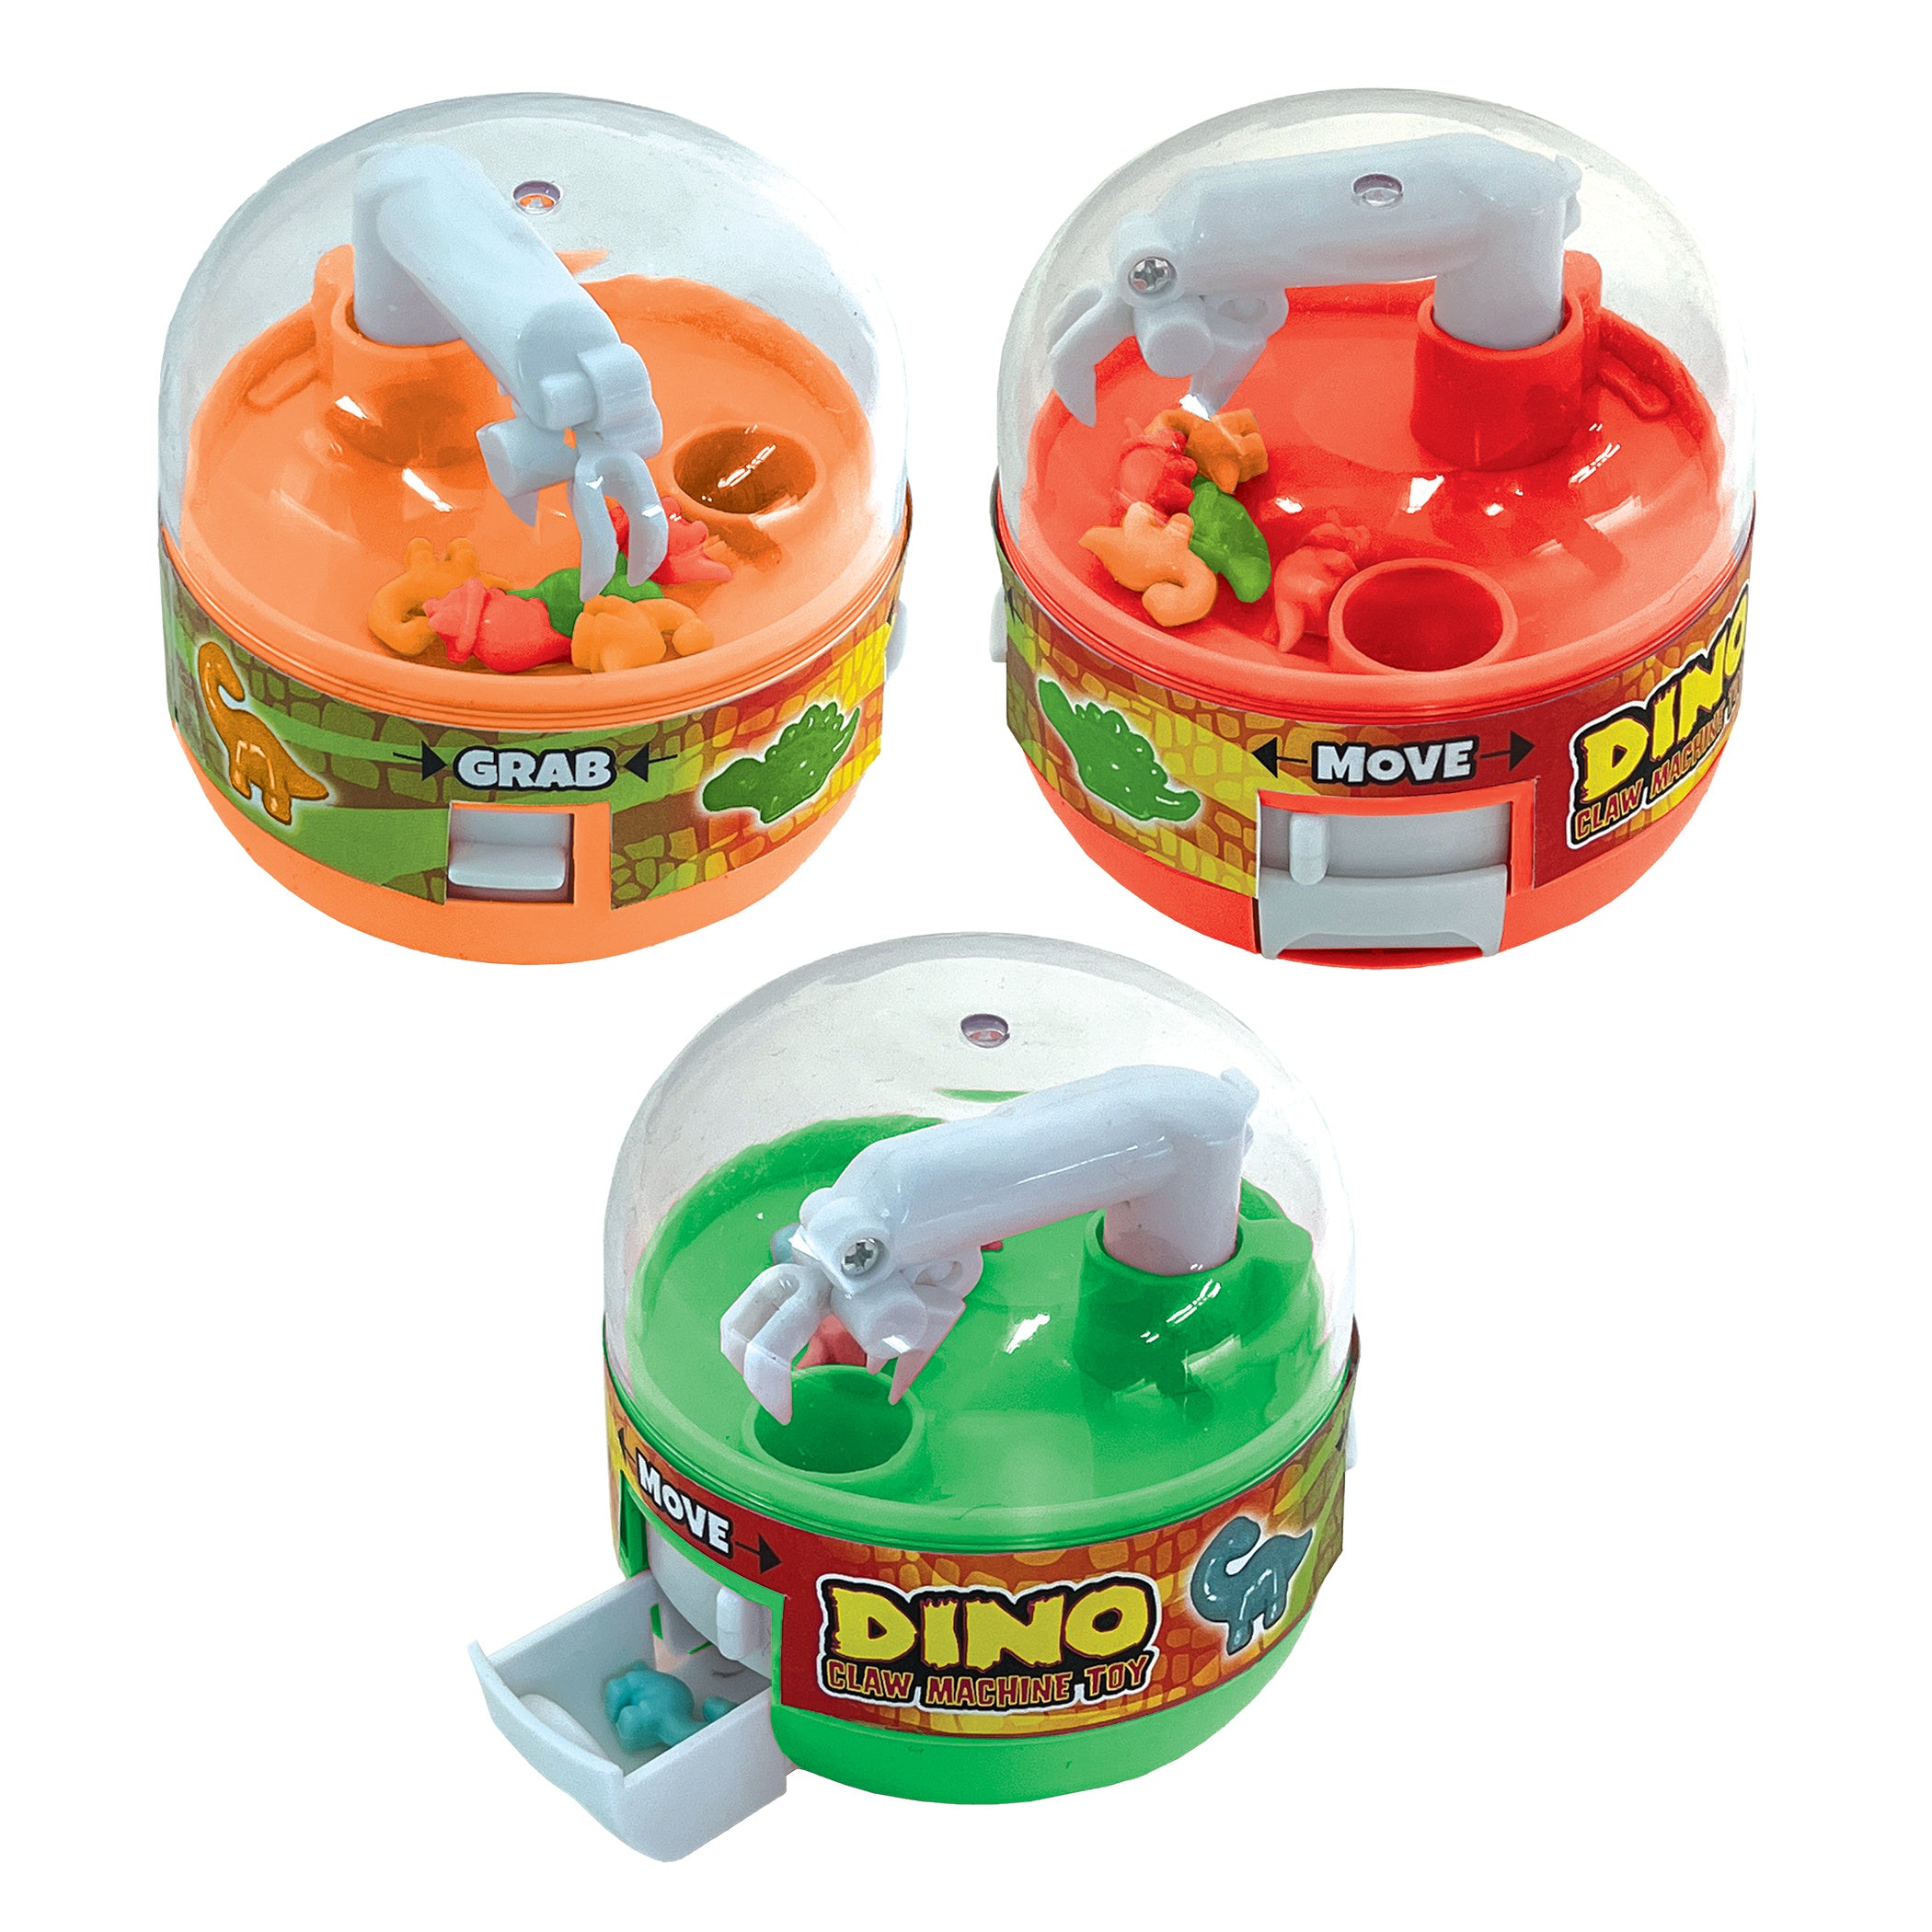 Dino Claw Machine Toys